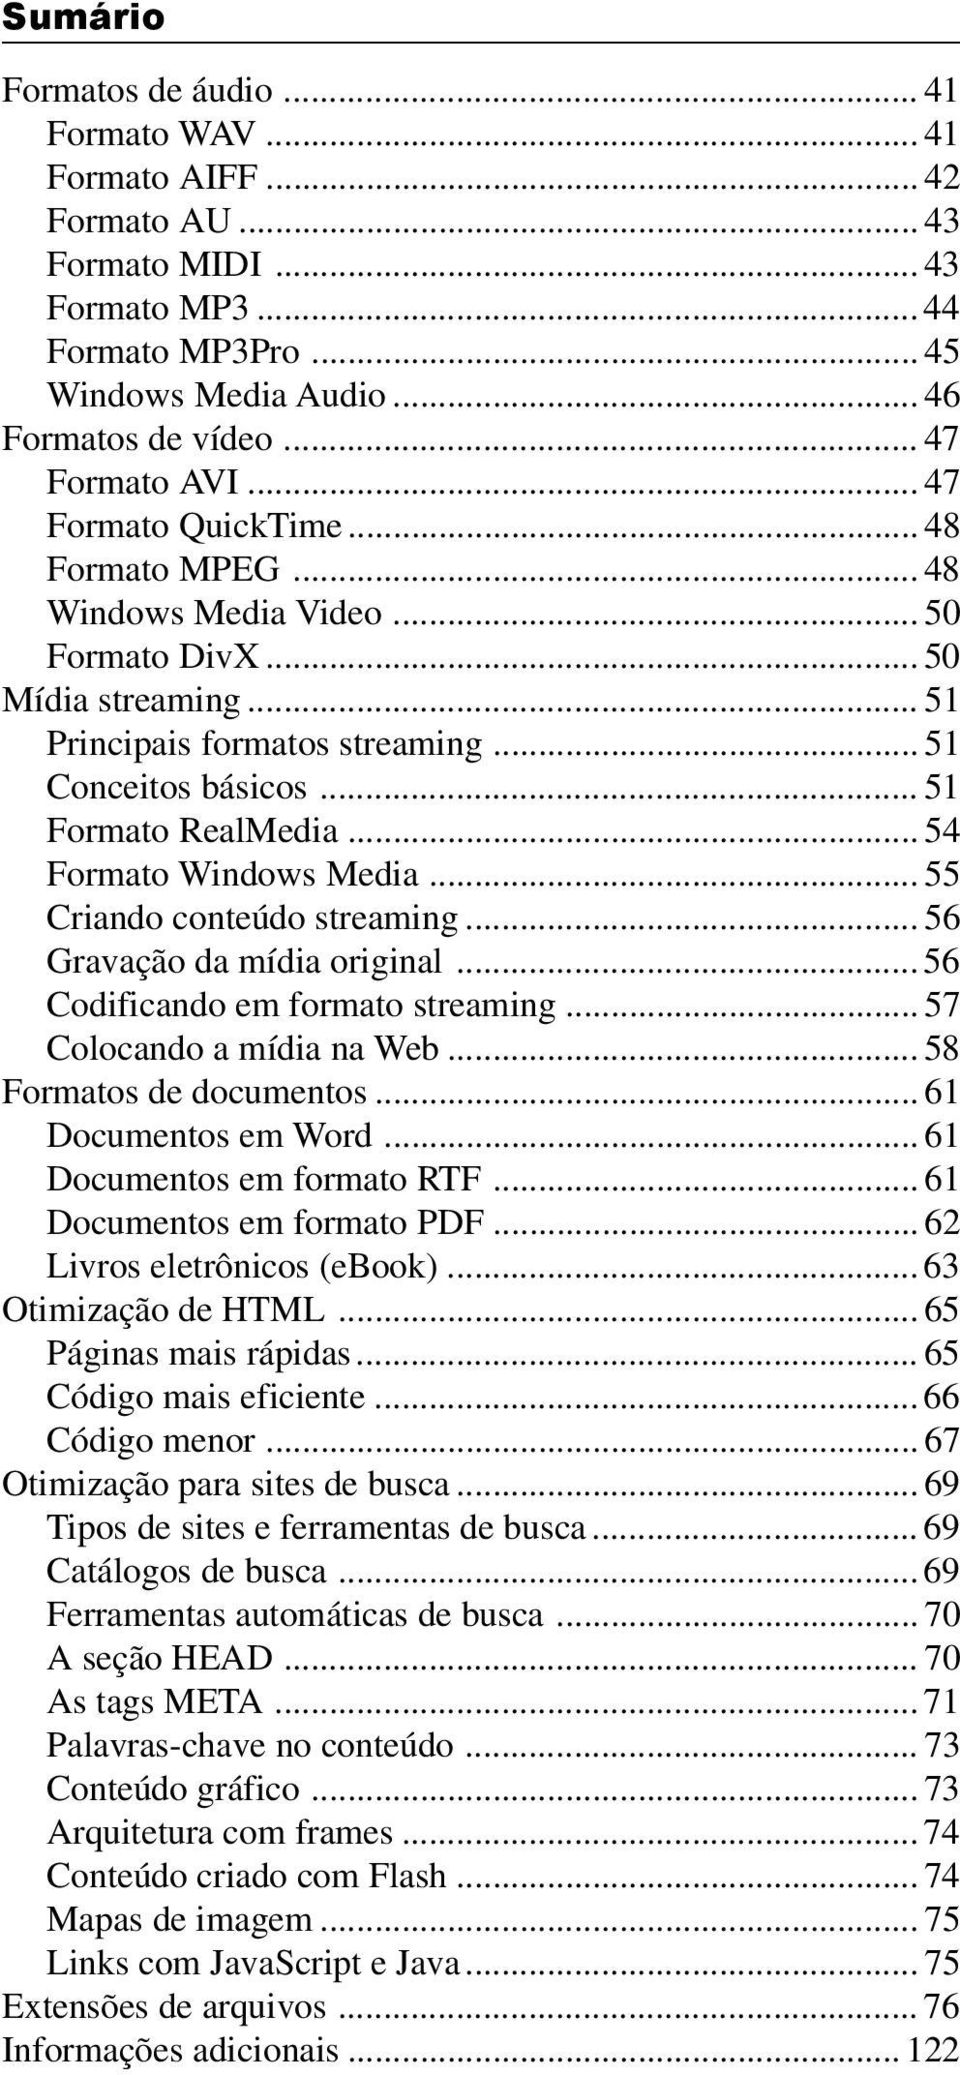 .. 51 Formato RealMedia... 54 Formato Windows Media... 55 Criando conteúdo streaming... 56 Gravação da mídia original... 56 Codificando em formato streaming... 57 Colocando a mídia na Web.